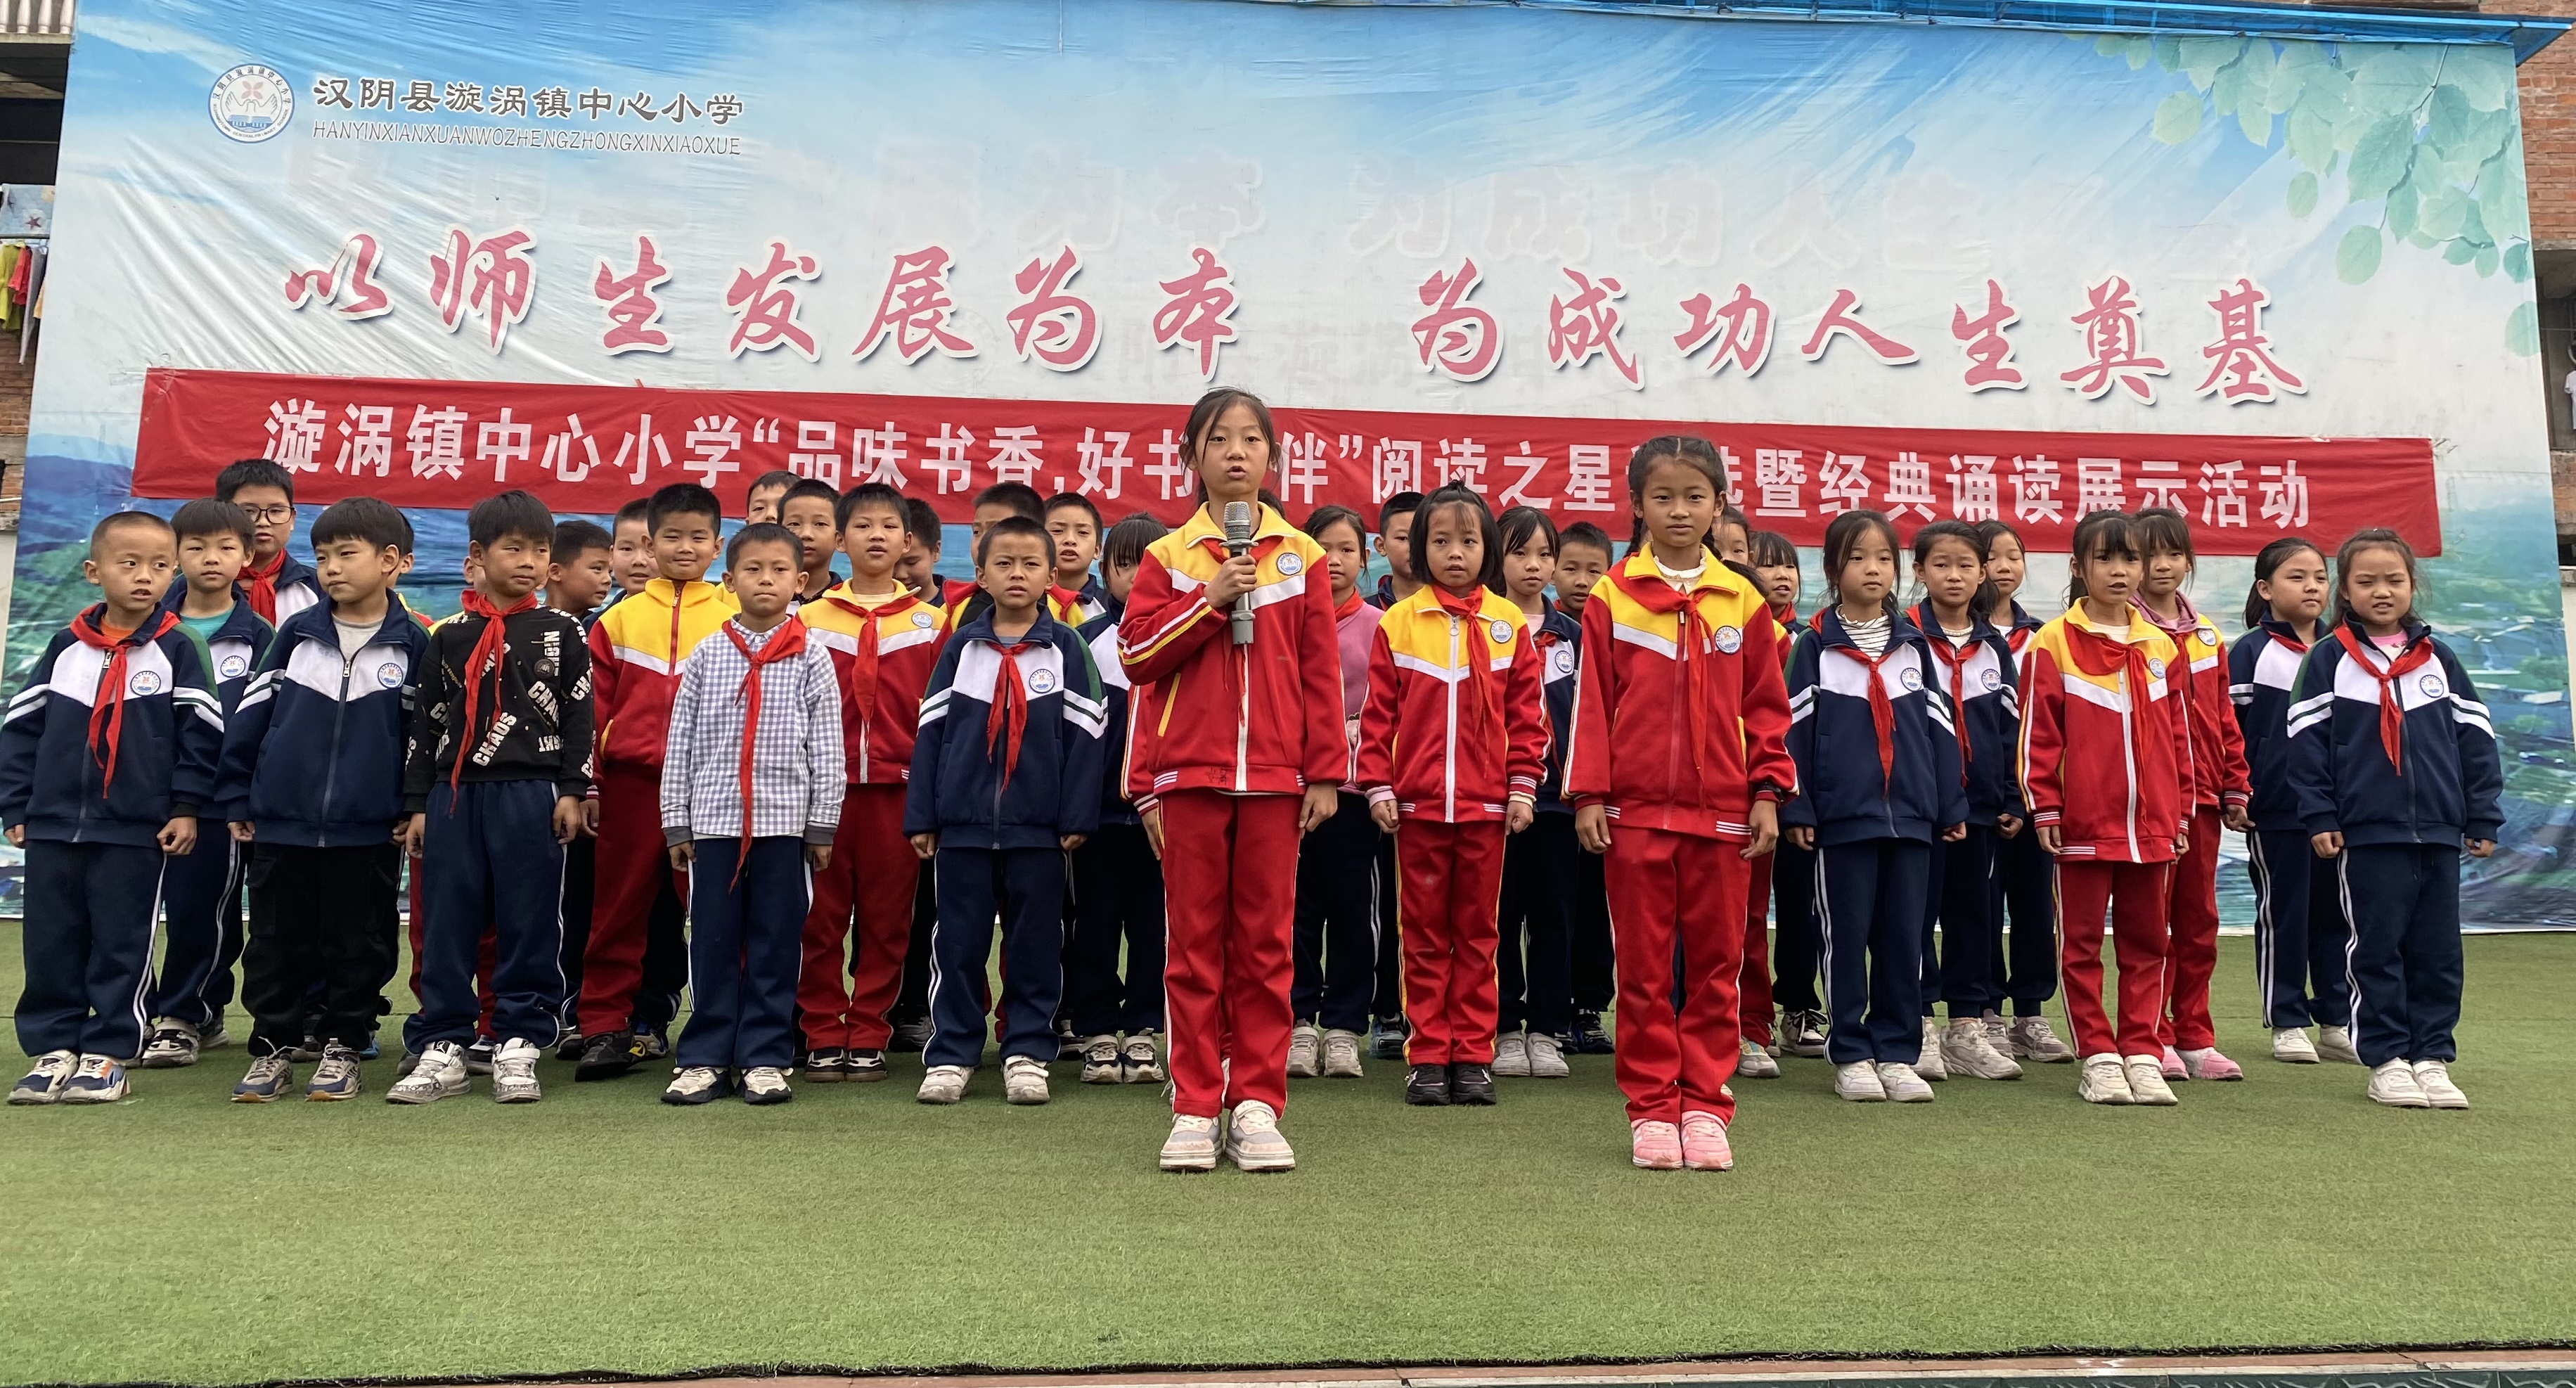 汉阴县漩涡镇中心小学举行“阅读之星”评选暨经典诵读活动